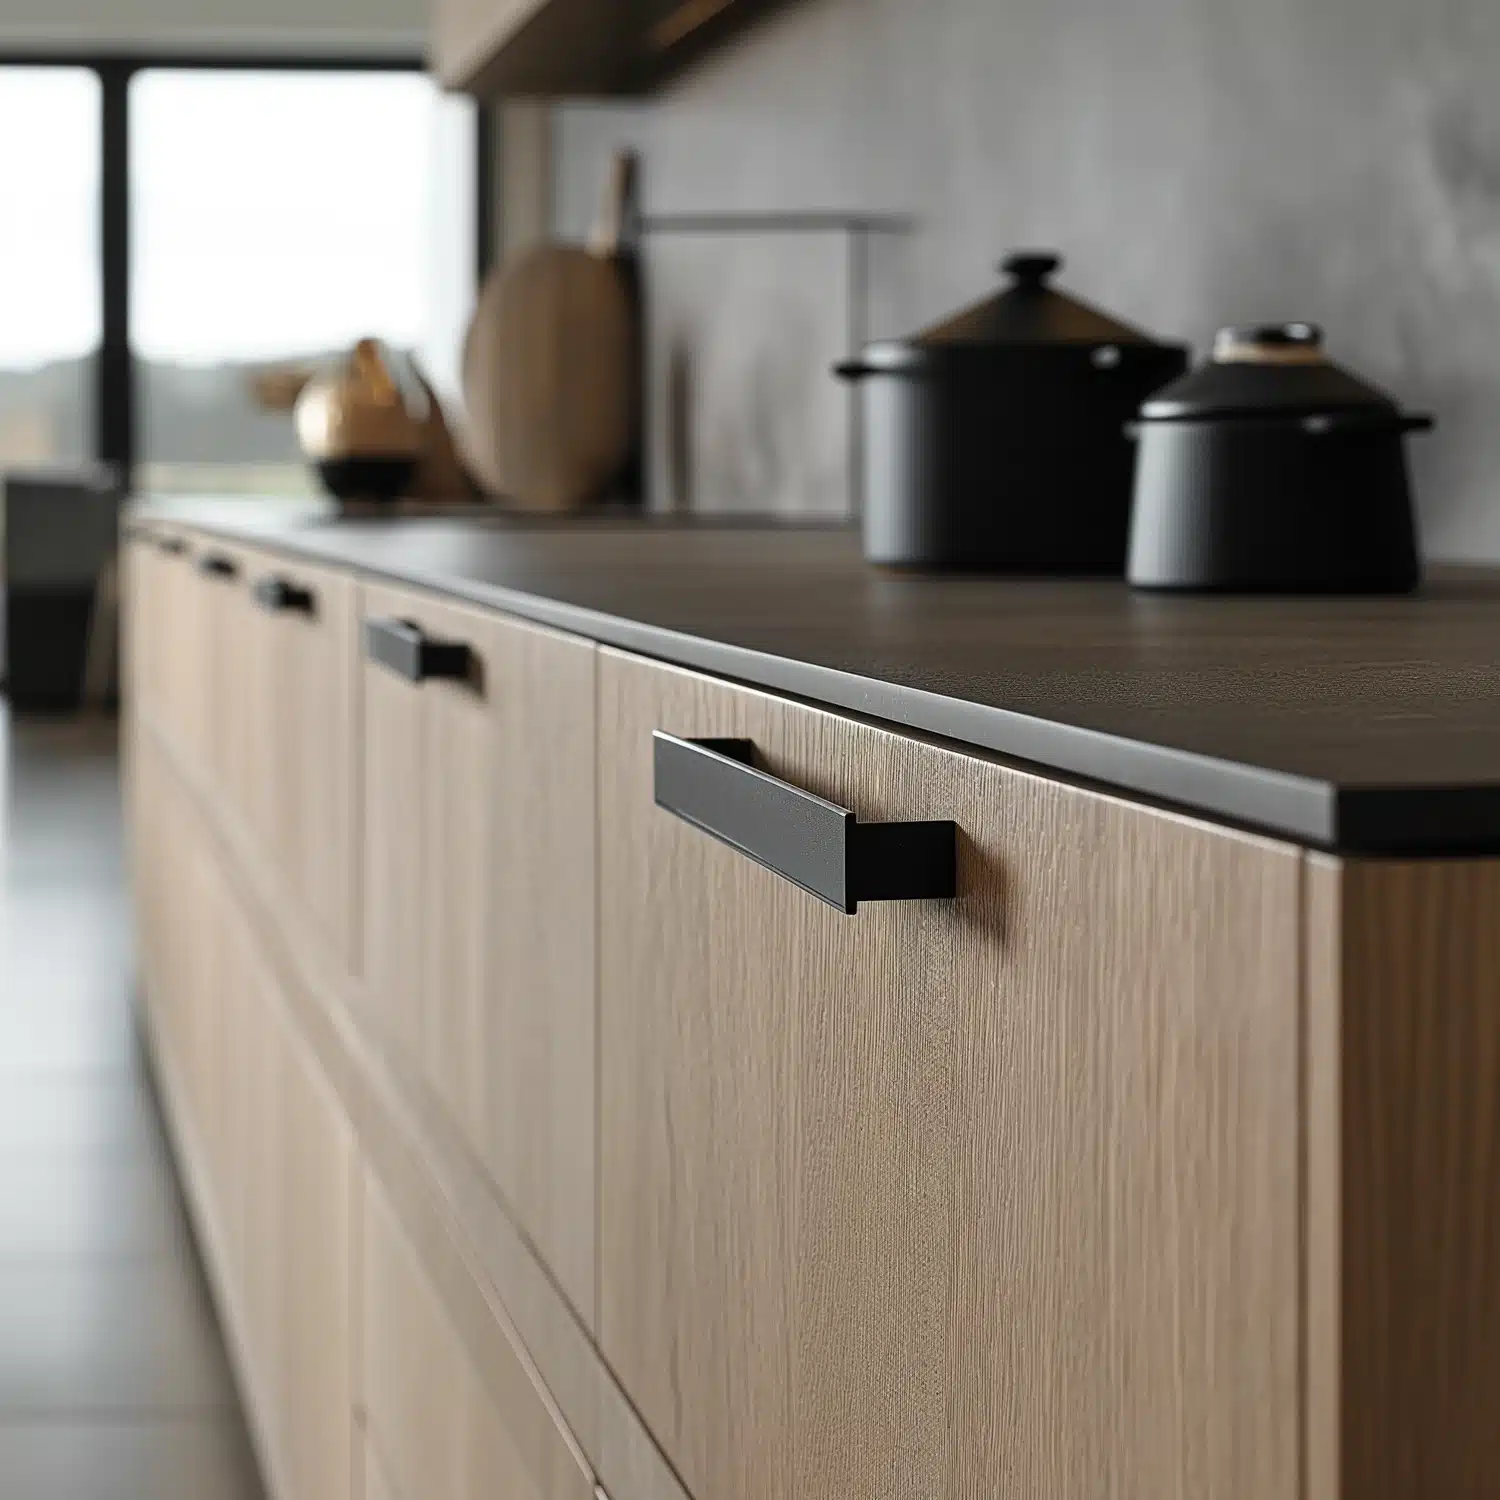 Nahaufnahme von minimalistischen Küchenschubladen mit stilvollen Griffen. Das Bild dient zur Visualisierung der Detailgenauigkeit und des Designs von minimalistischen Küchenmöbeln, die im Blogartikel diskutiert werden.